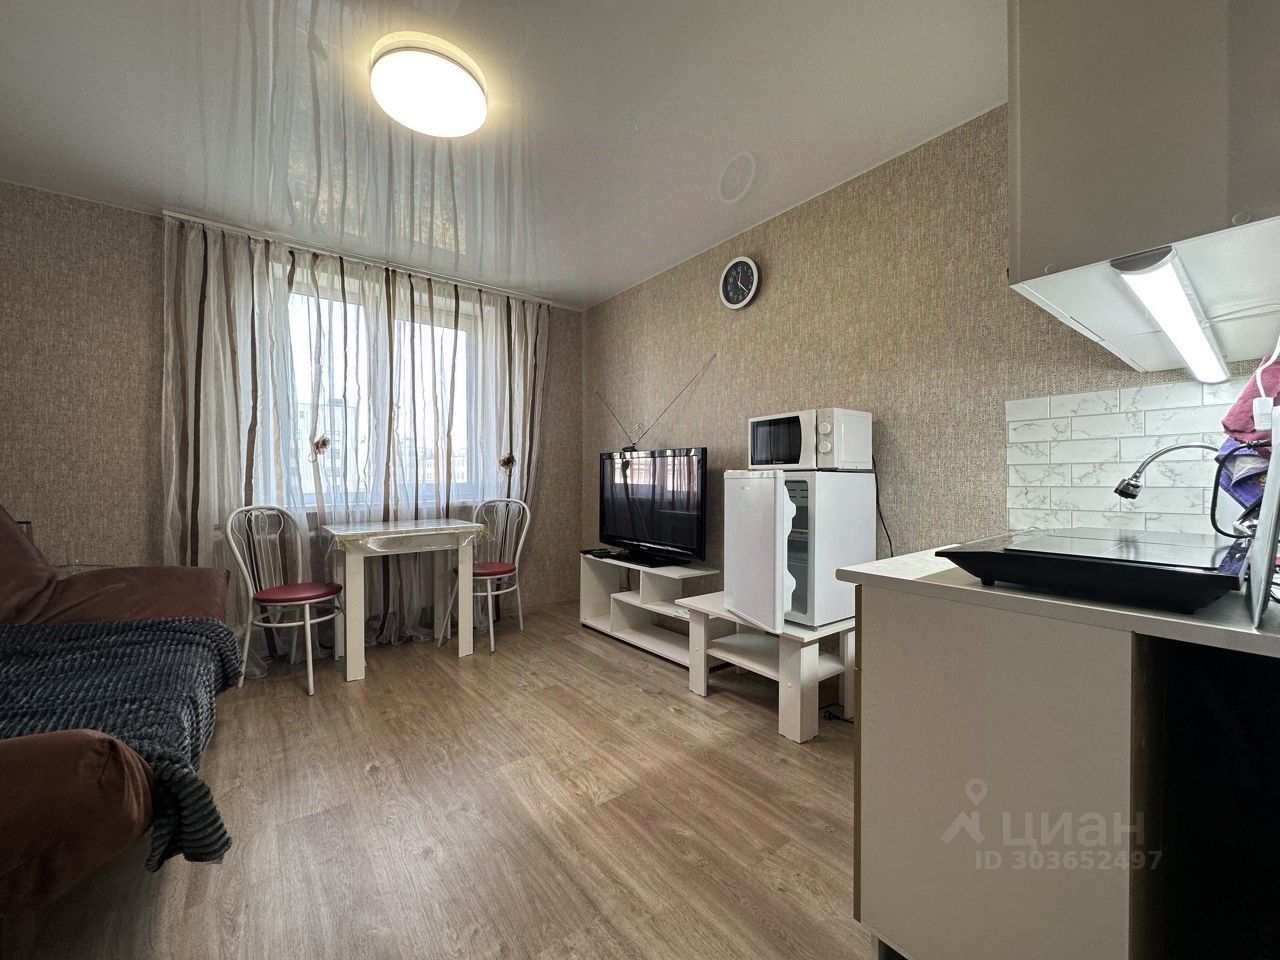 Уютная квартира в Екатеринбурге, 18 кв.м, 6 этаж, современный интерьер, мебель и техника включены. Отличное место для жизни.